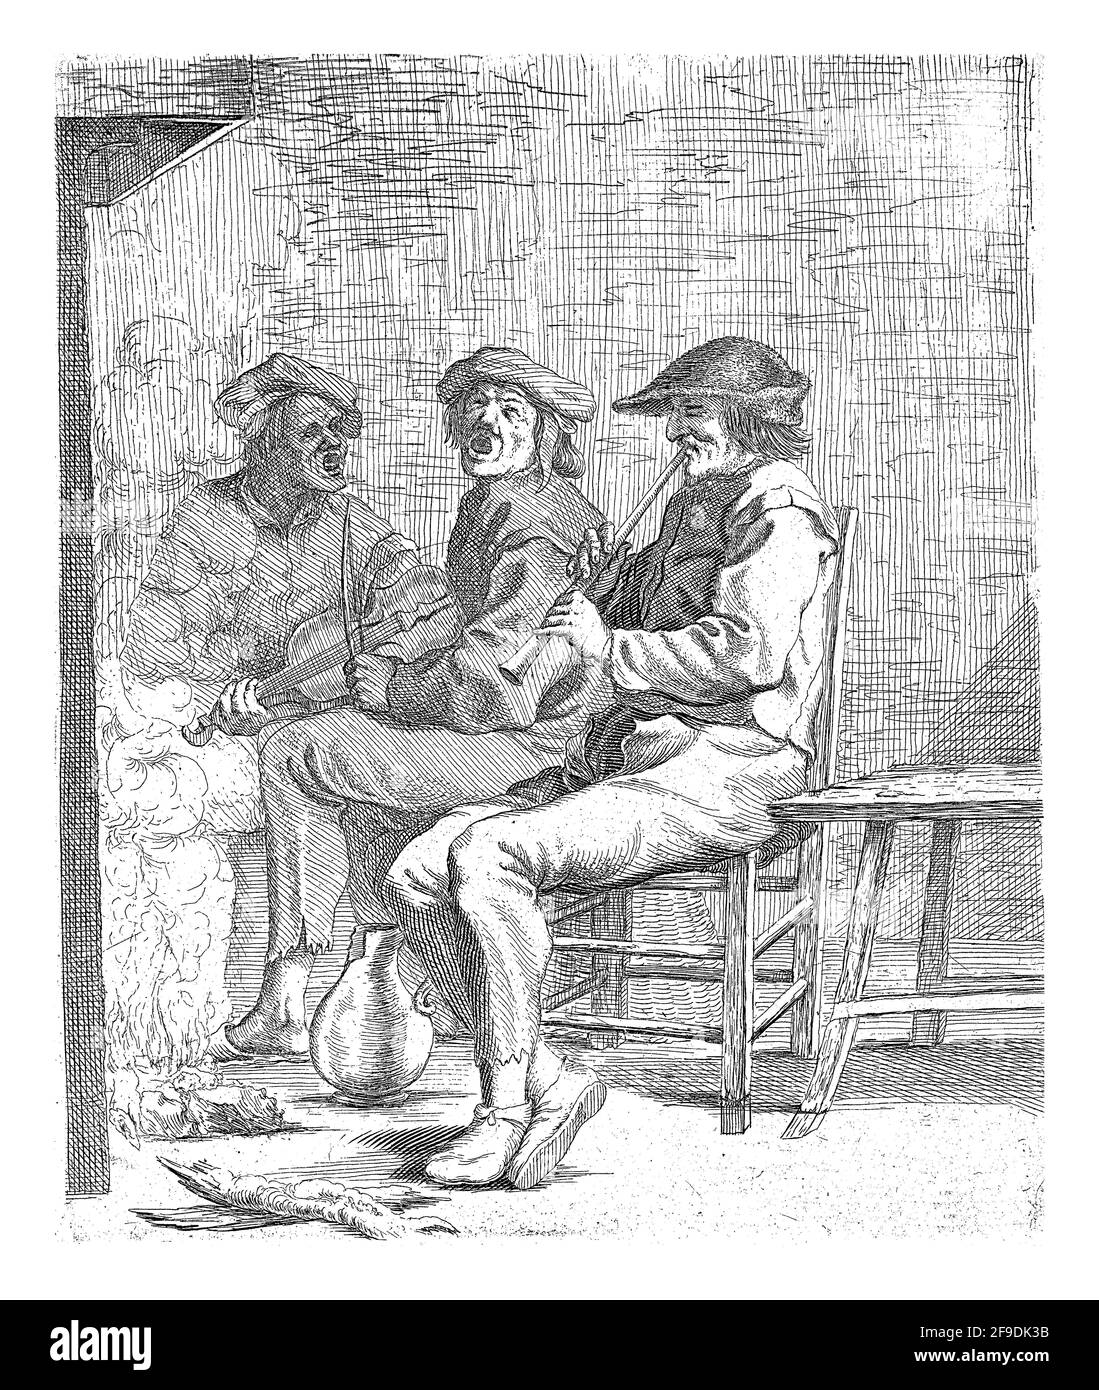 Trois hommes qui font de la musique s'assoient devant un foyer. Un homme joue la flûte, un autre violon, le troisième chante. Banque D'Images